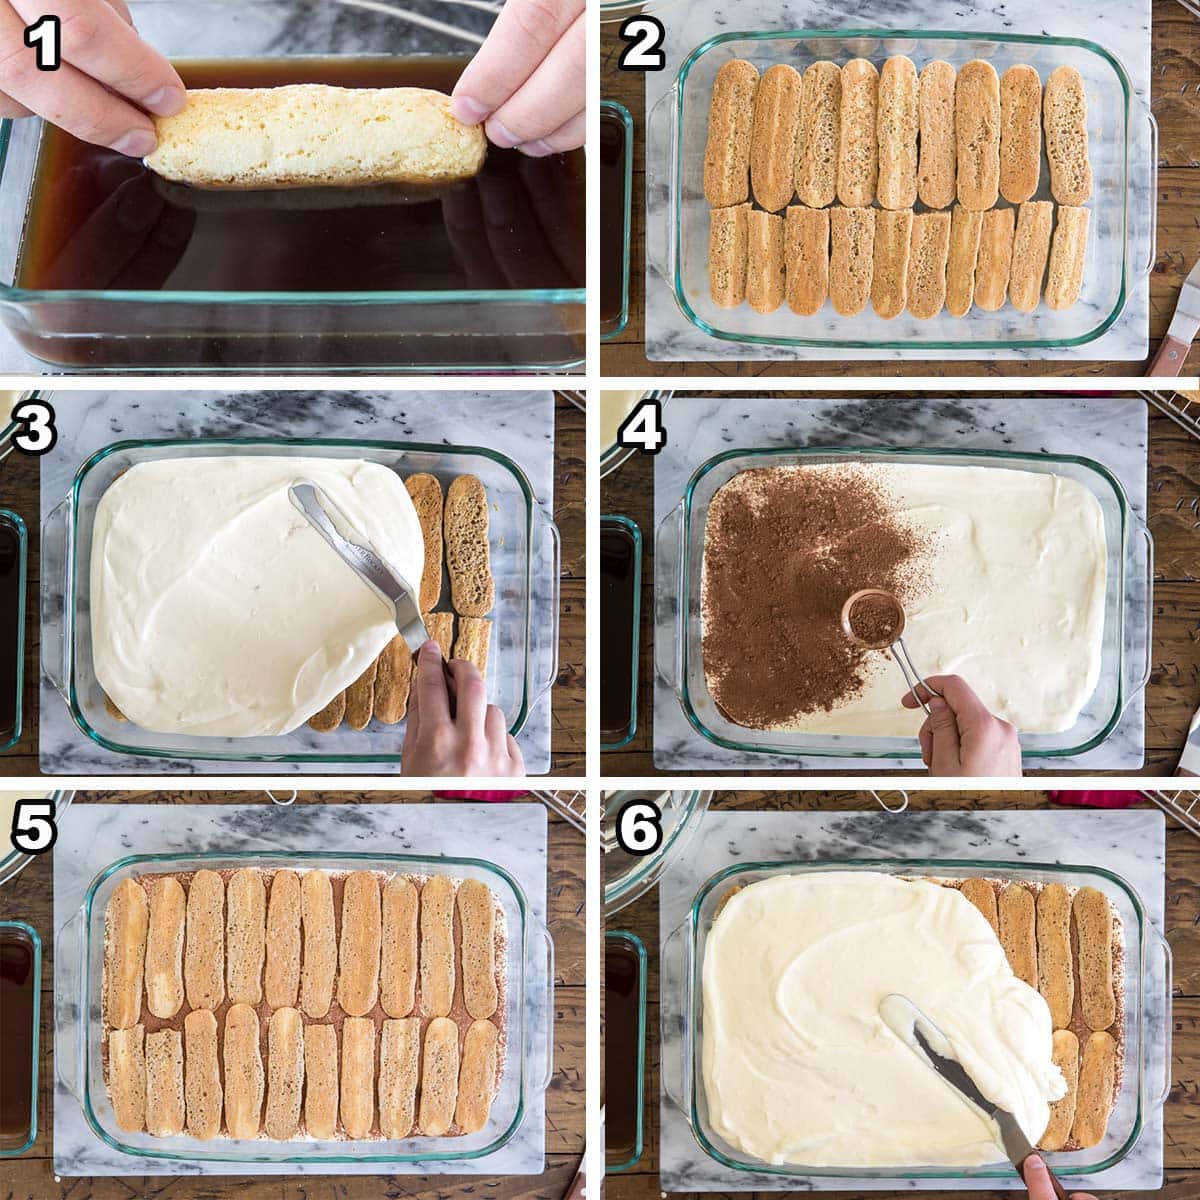 Assembling tiramisu: 1) dip ladyfingers; 2) layer ladyfingers; 3) spread cream 4) sift cocoa; 5) more ladyfingers; 6) more cream